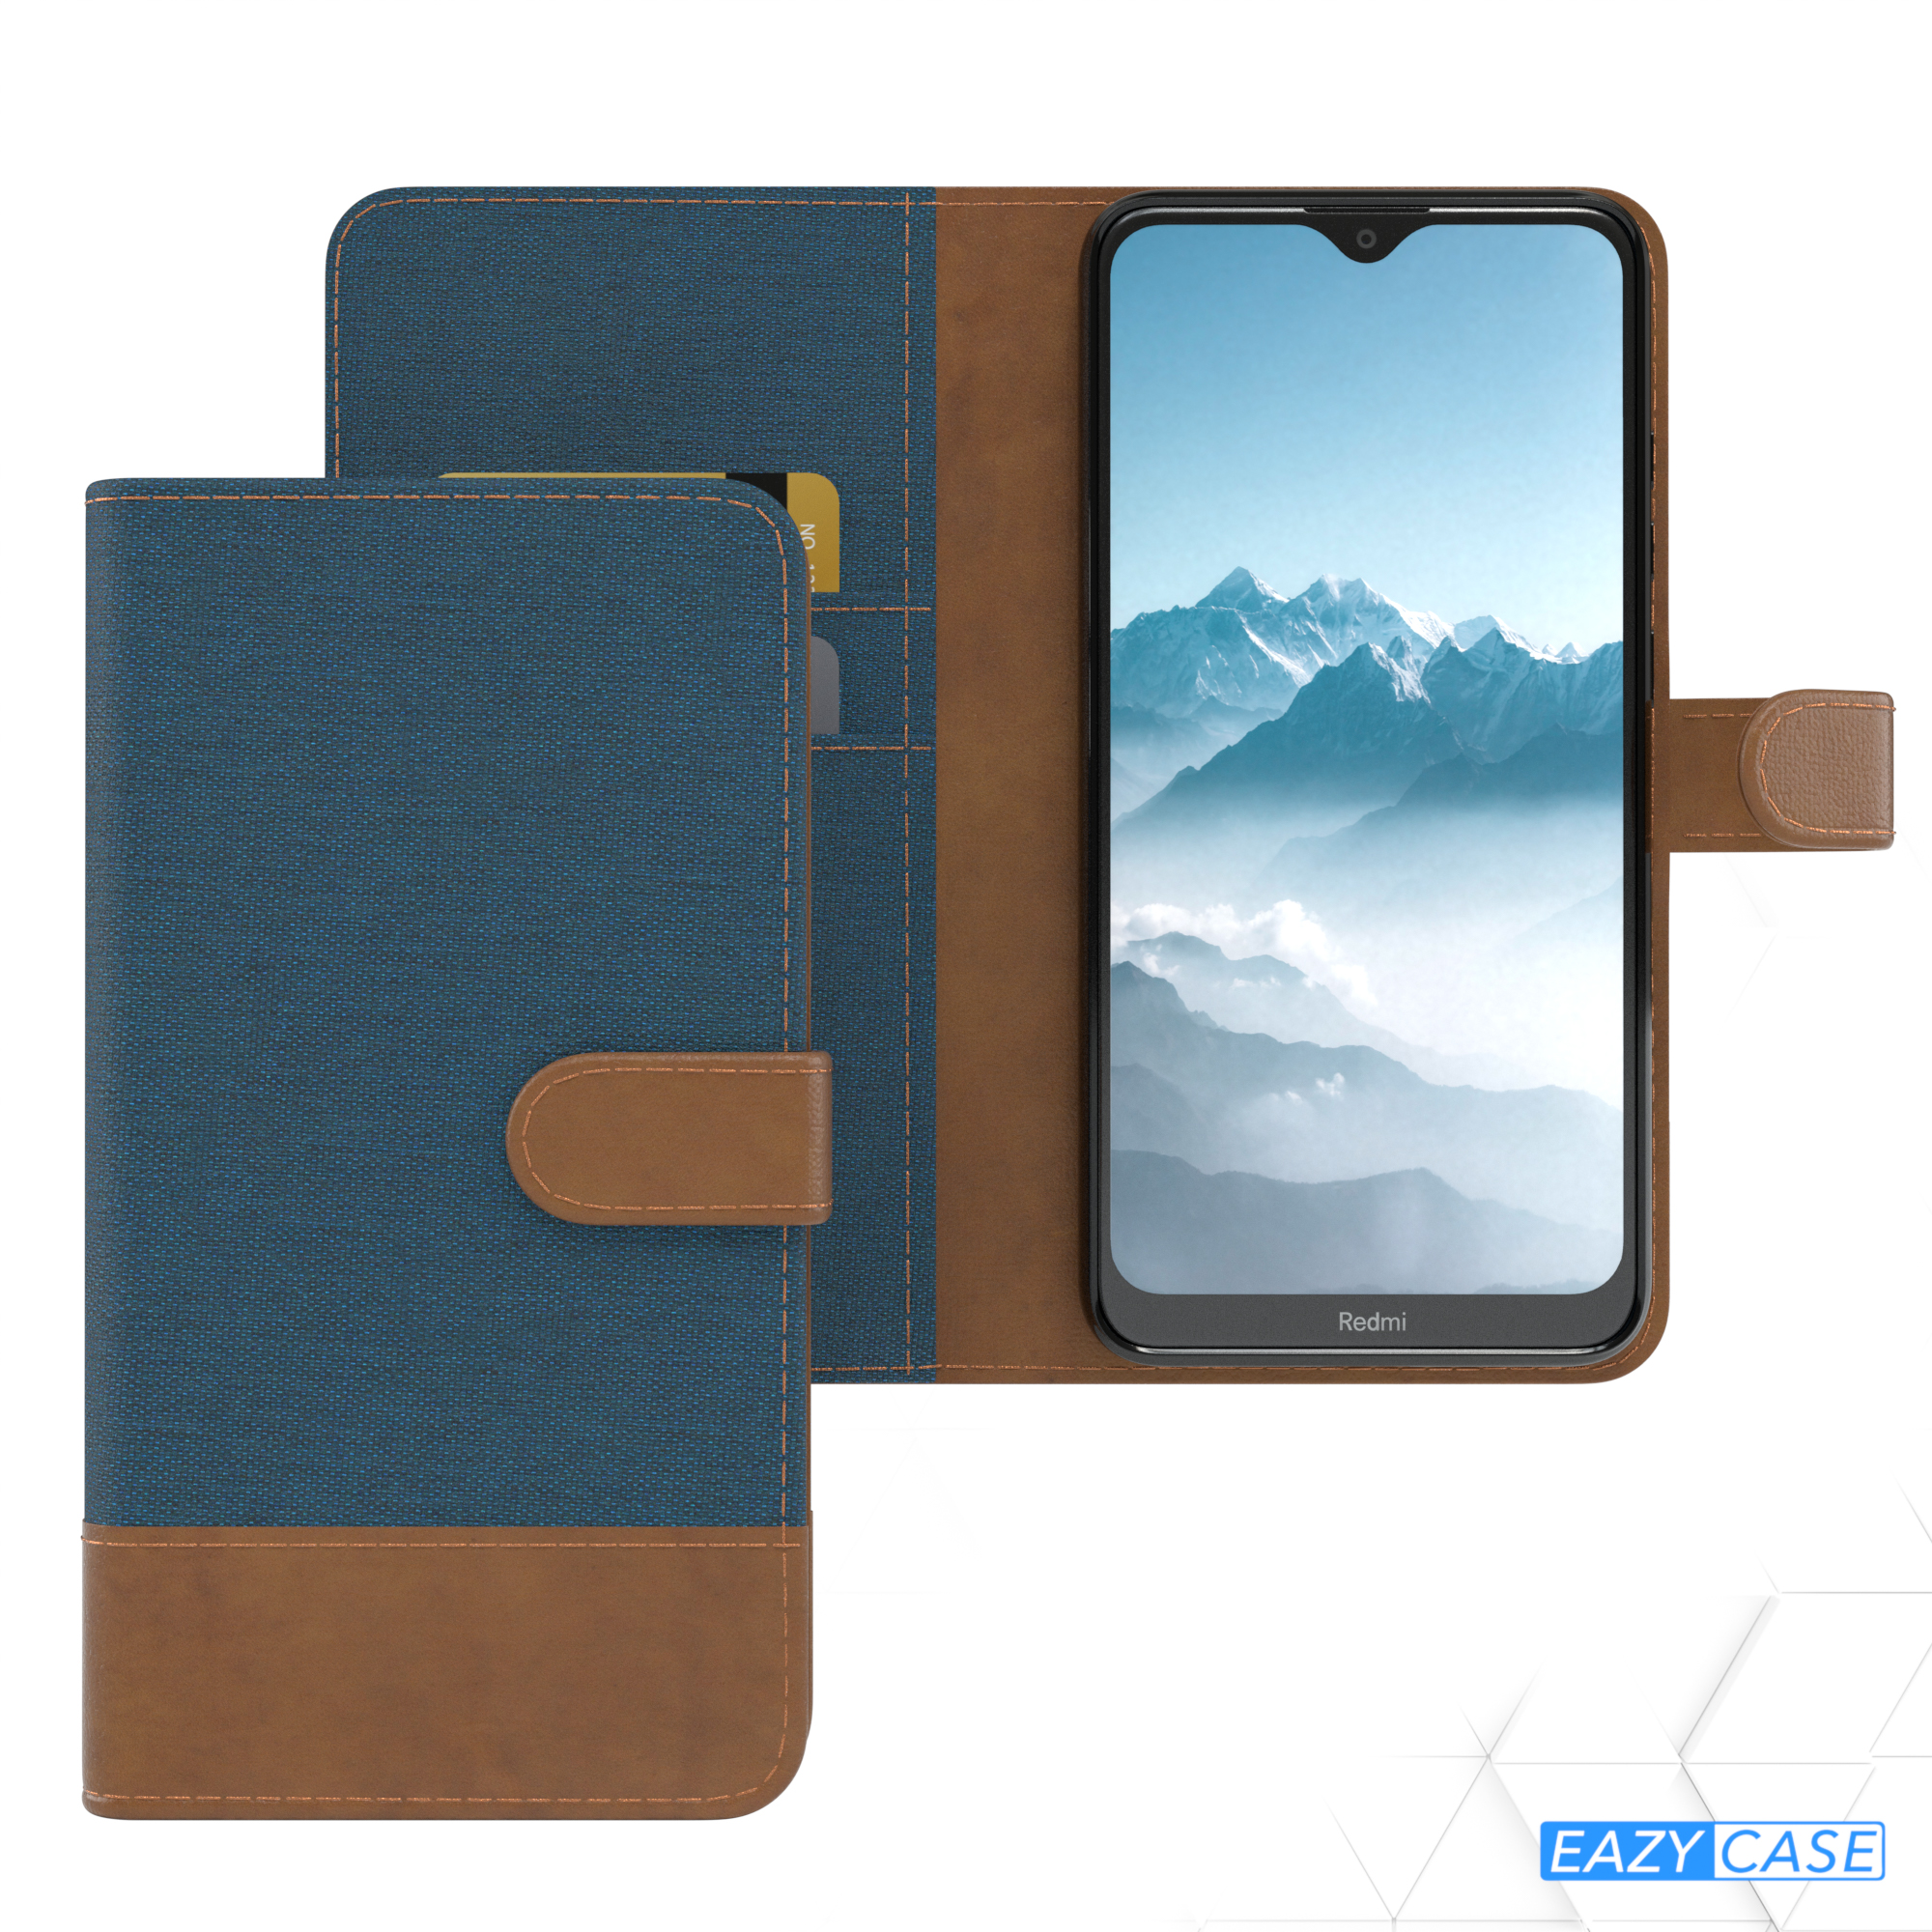 EAZY CASE Xiaomi, 8a, Bookcover, Jeans Blau mit Kartenfach, Bookstyle Redmi Klapphülle